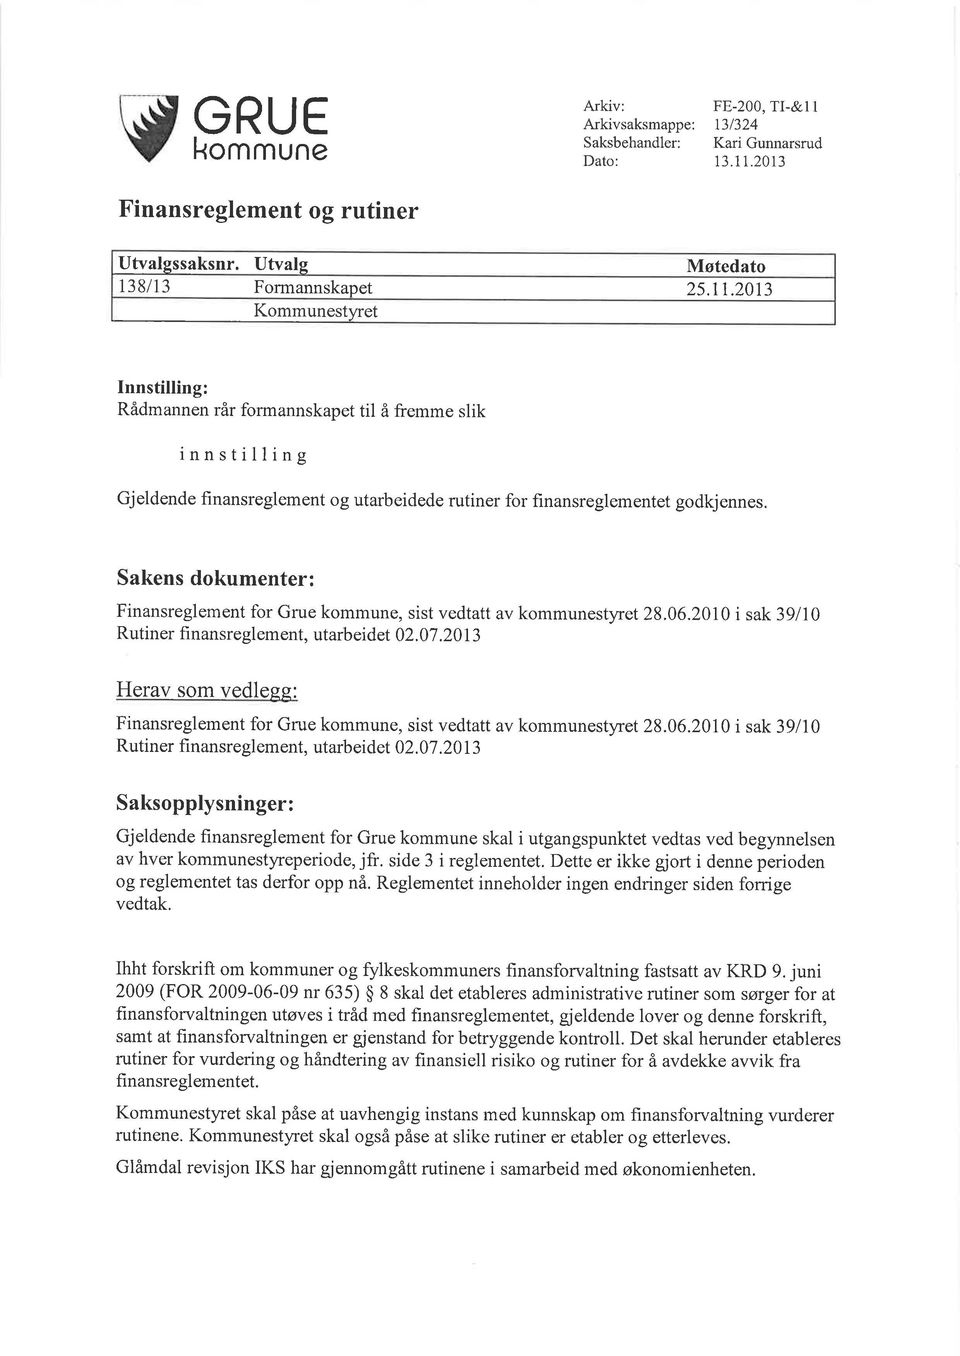 Sakens dokumenter: Finansreglement for Grue kommune, sist vedtatt av kommunestyret 28.06.2010 i sak 39110 Rutiner finansreglement, utarbeidet 02.07.